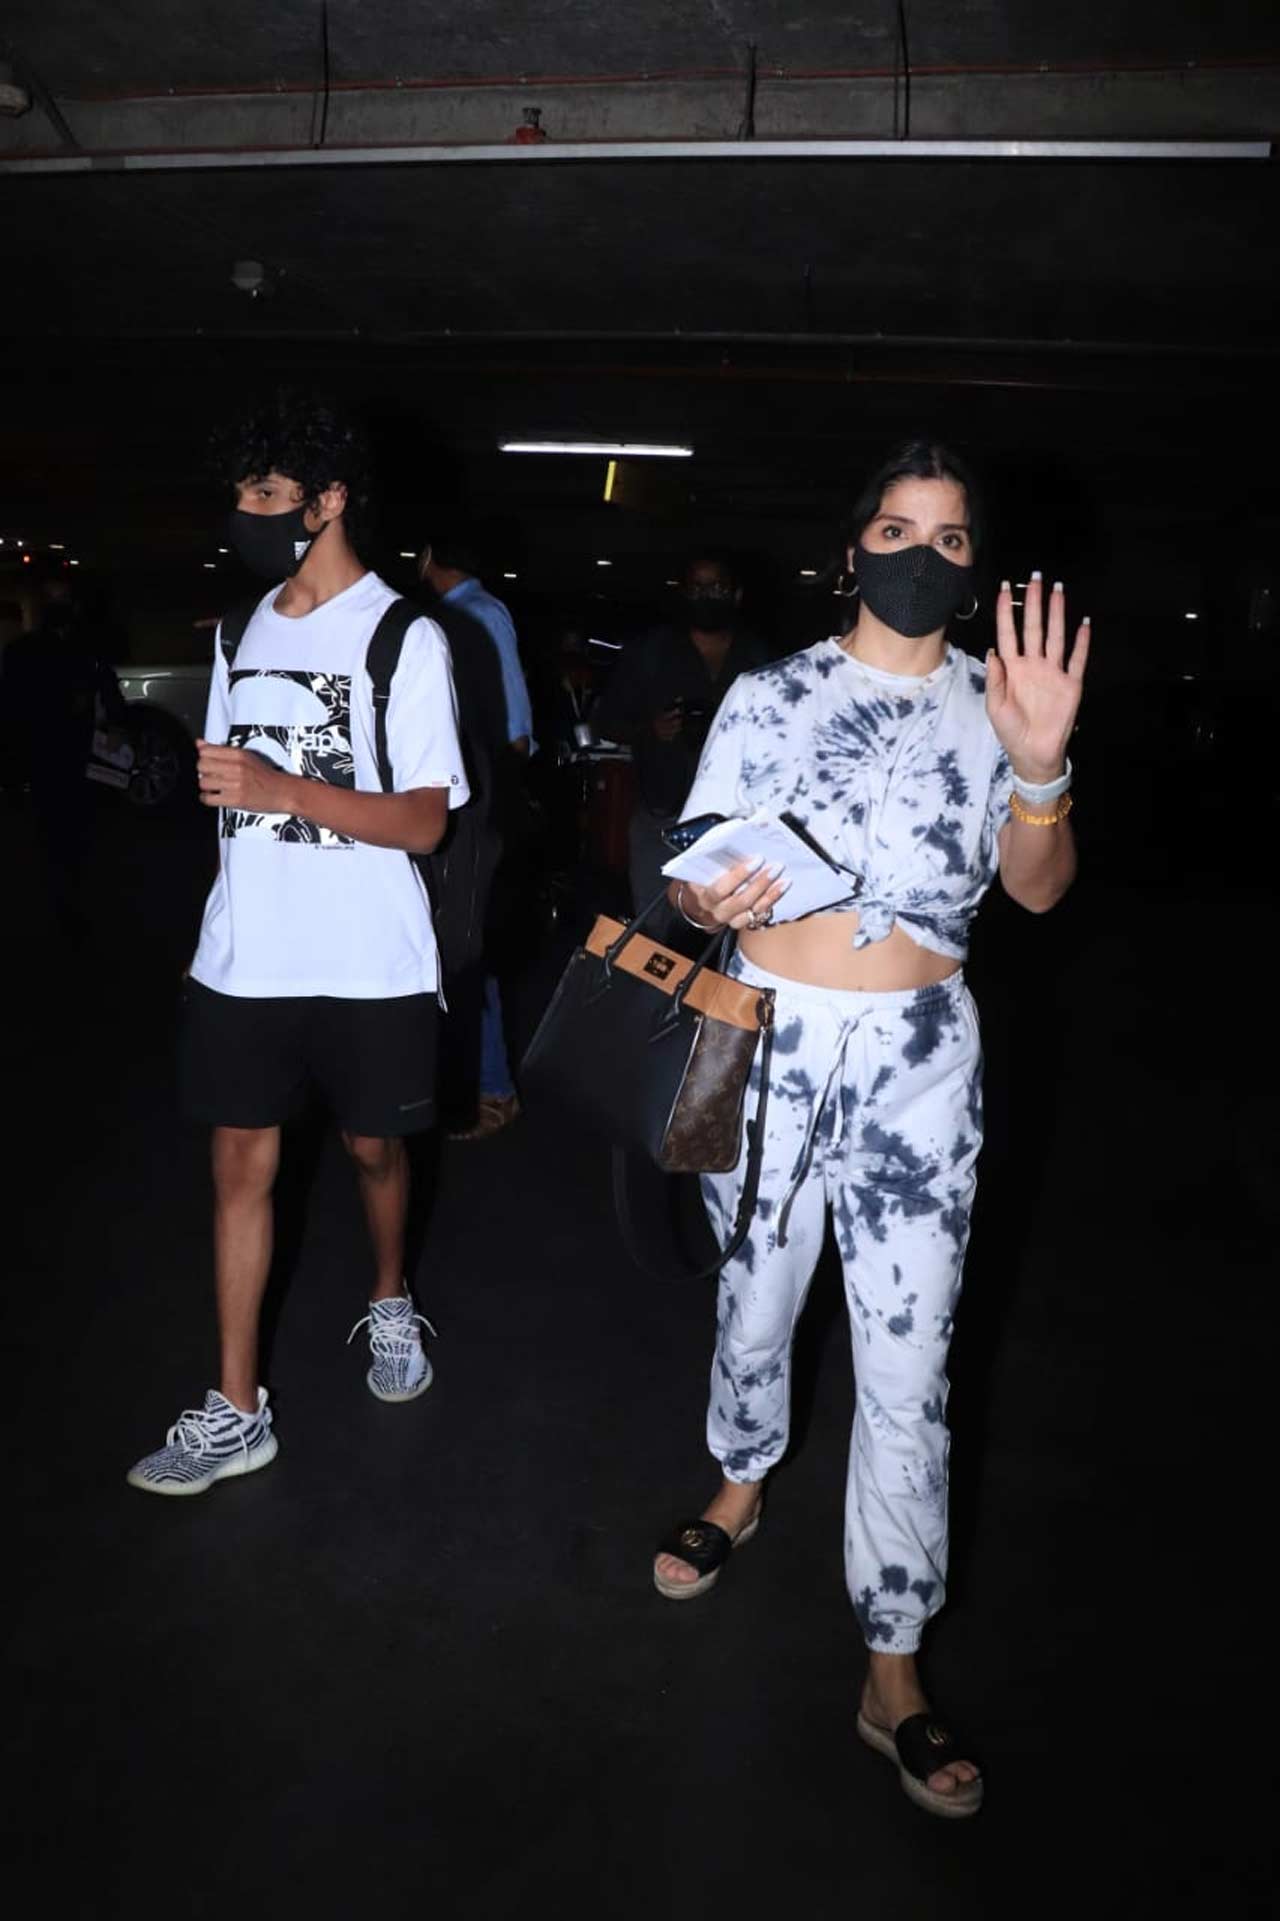 Maheep Kapoor and Seema Khan were clicked with their kids - Jahaan Kapoor and Yohan Khan at the Mumbai airport.